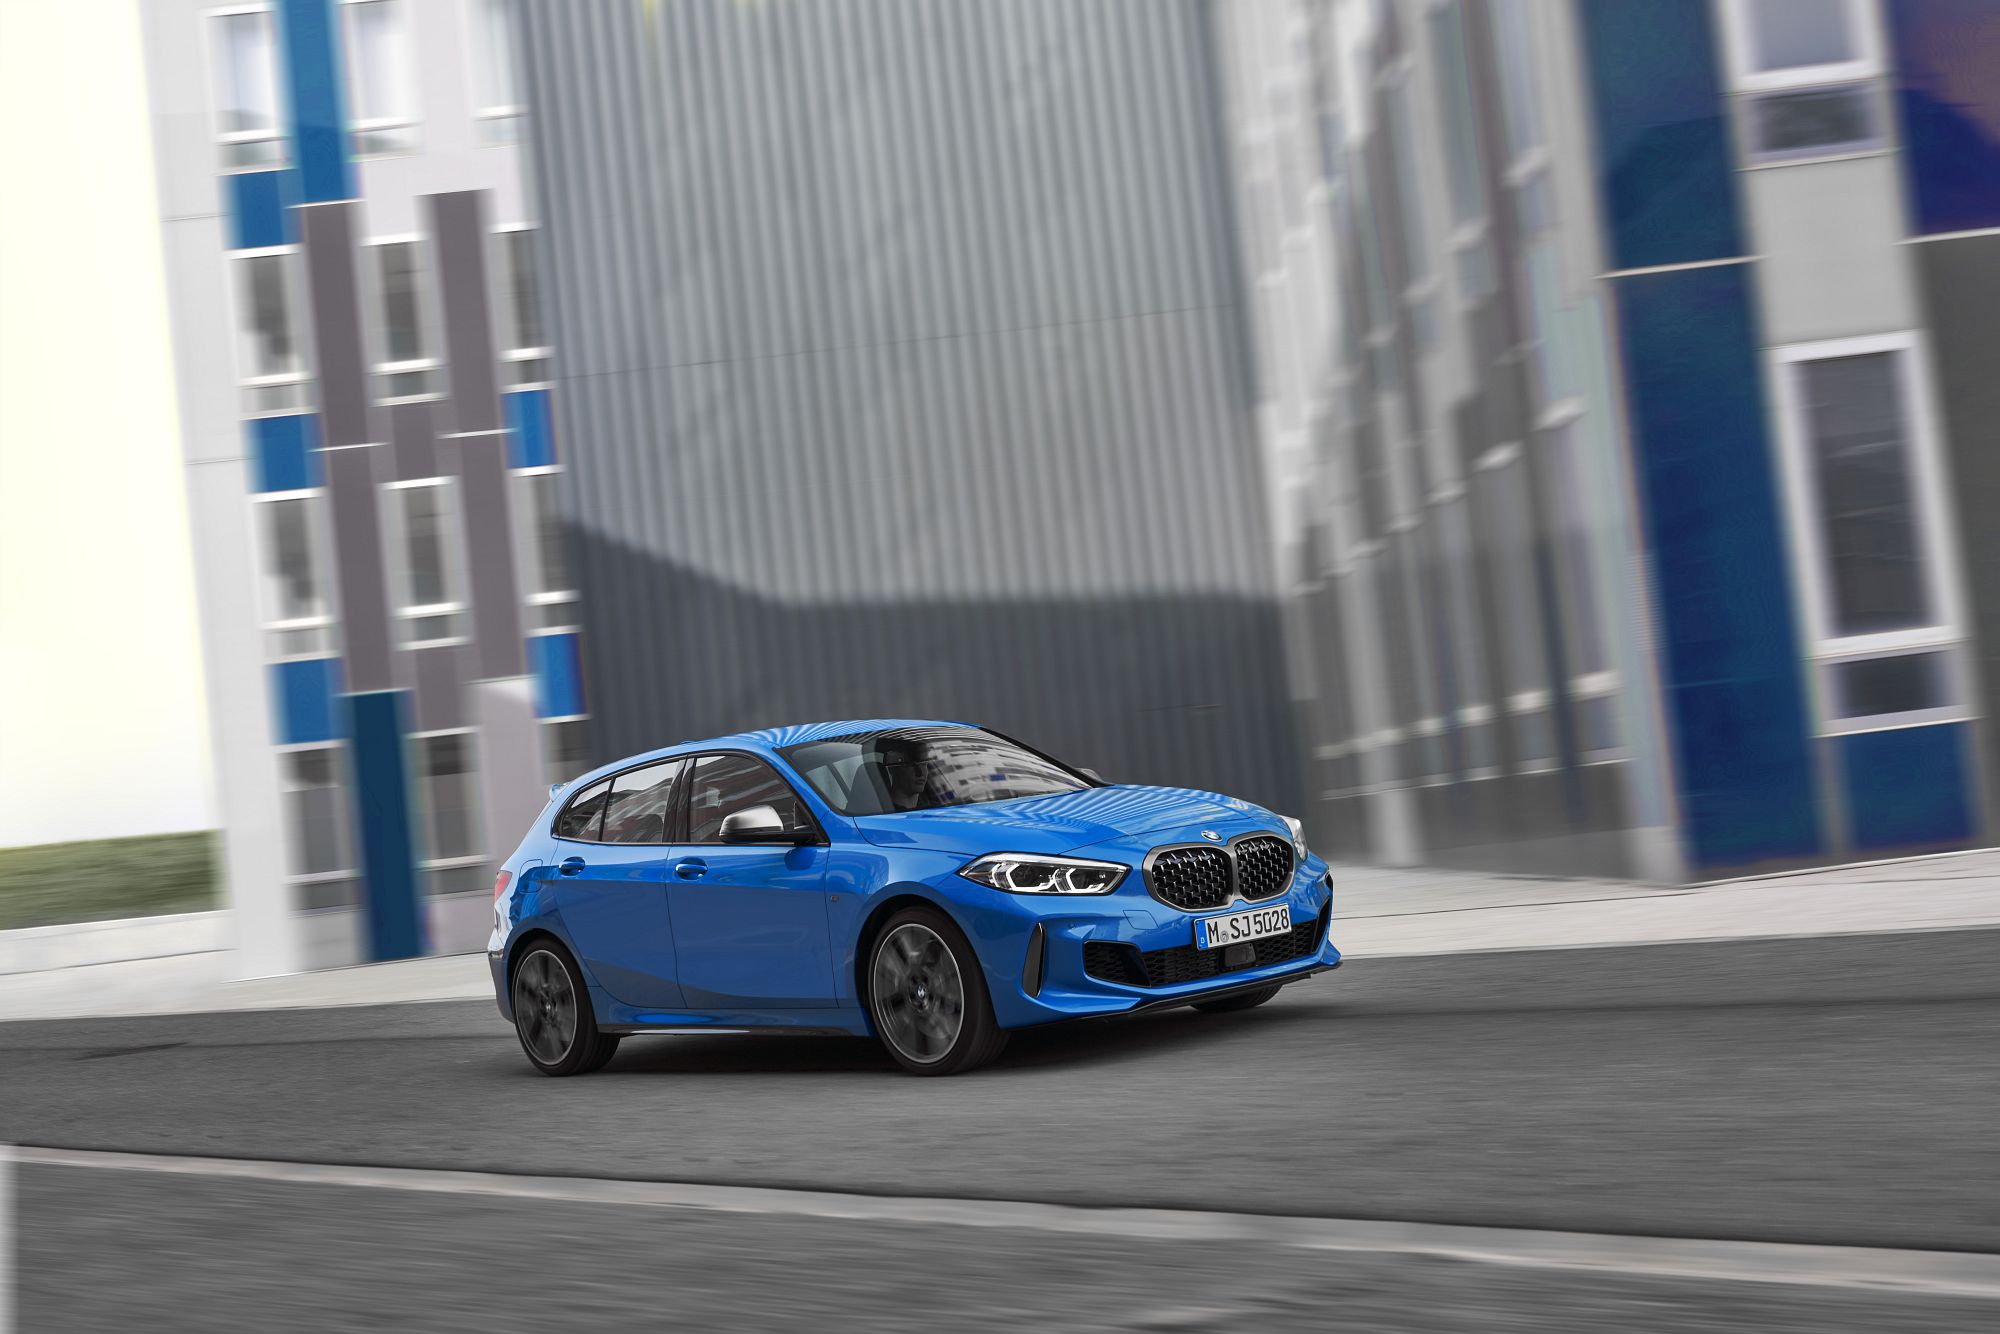 BMW Série 1 2019 oficiais _(29)